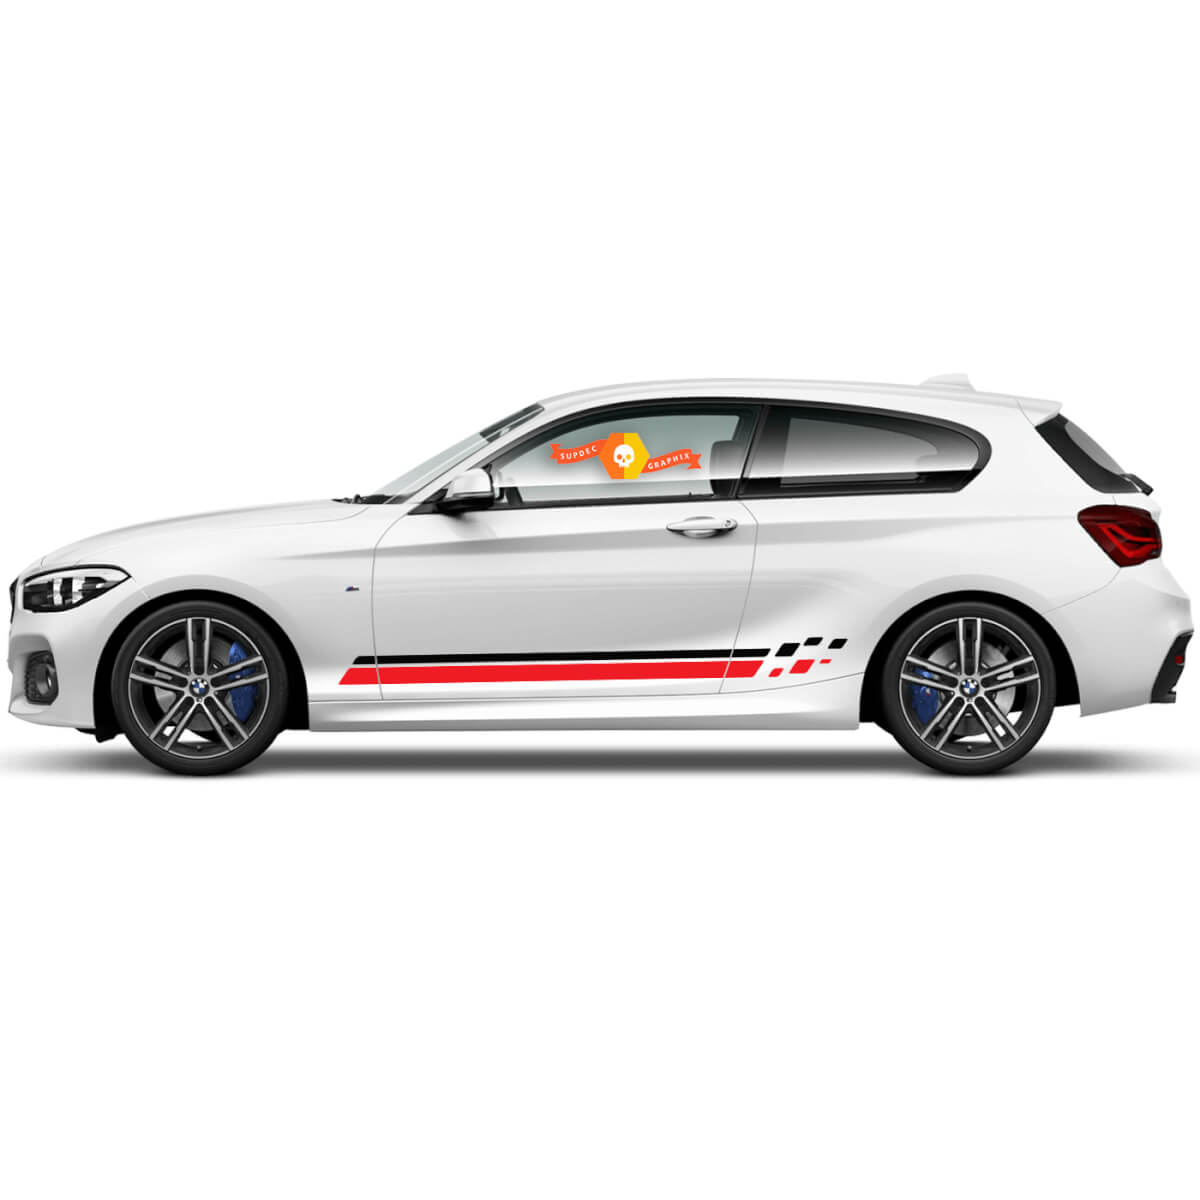 2 x Vinyl-Aufkleber, grafische Aufkleber, seitliche Türstreifen für BMW 1er-Serie 2015, neu
